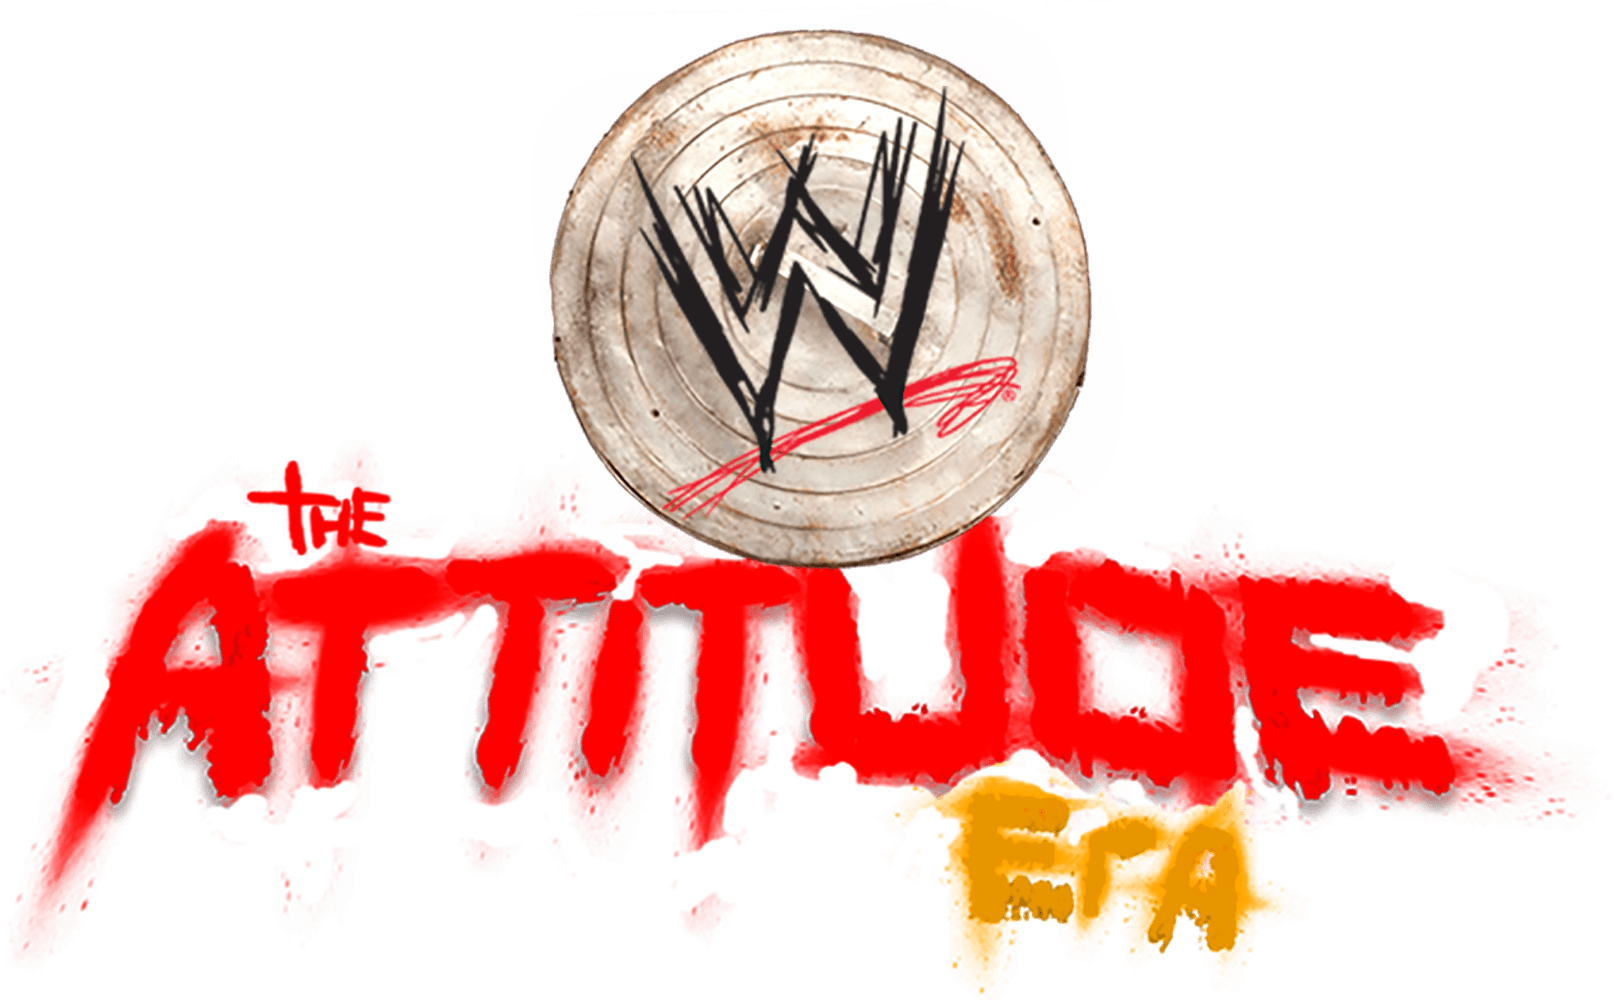 WWE: The Attitude Era logo